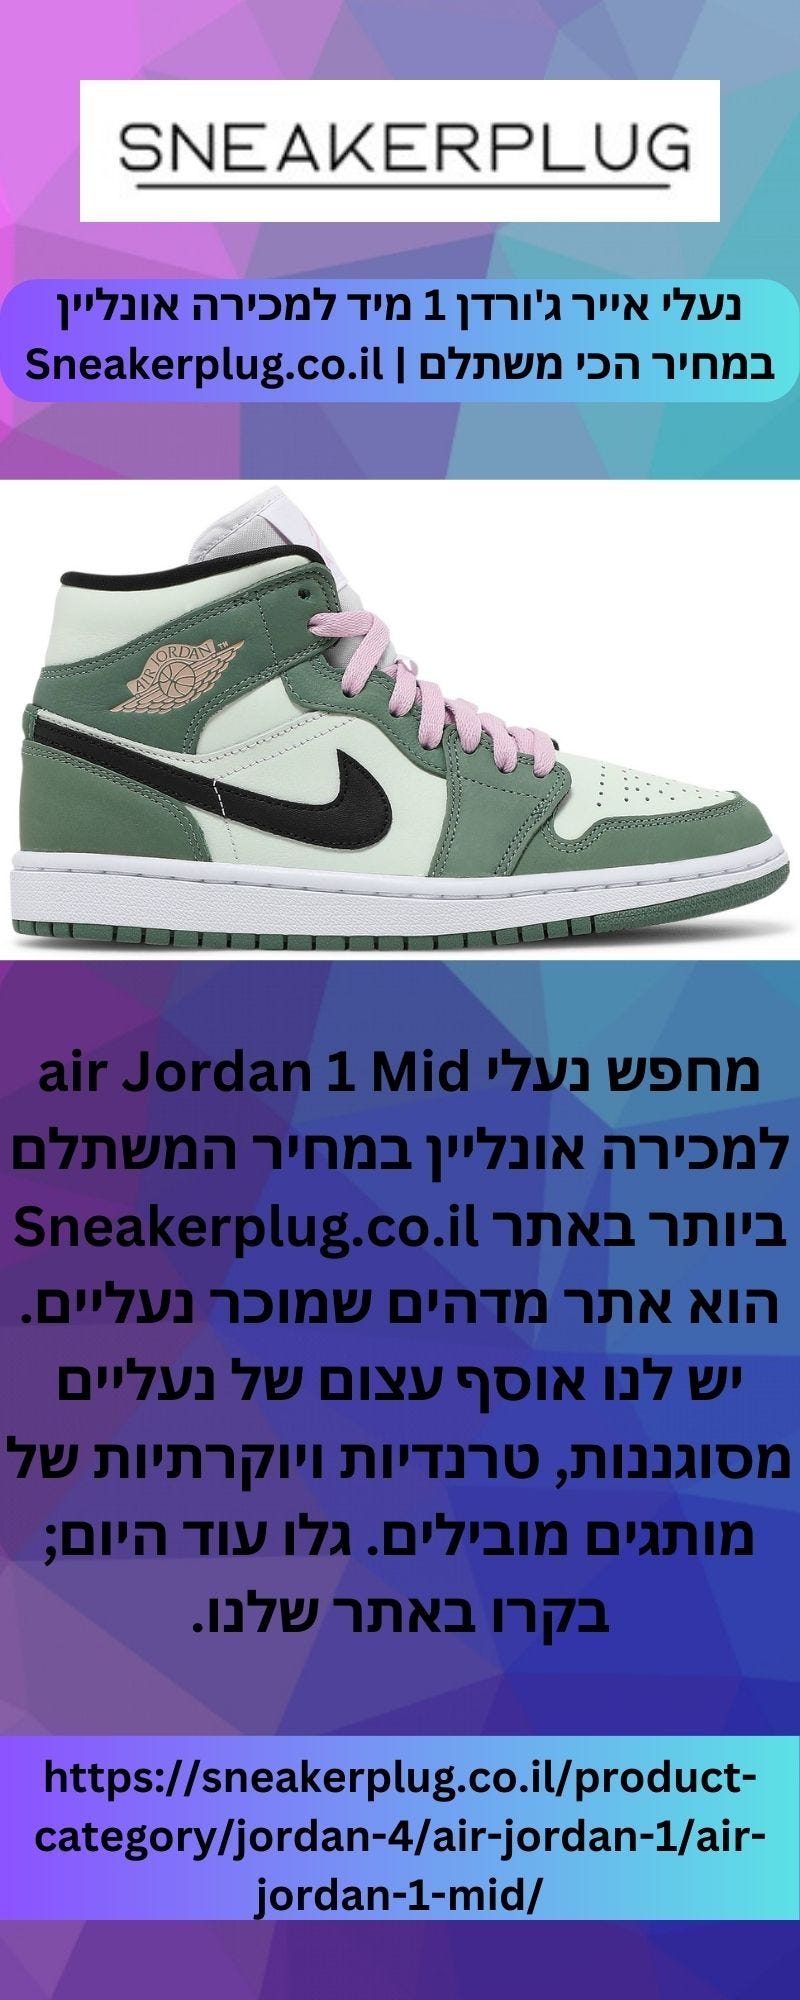 נעלי אייר ג'ורדן 1 מיד למכירה אונליין במחיר הכי משתלם | Sneakerplug.co.il -  SNEAKERPLUG - Medium